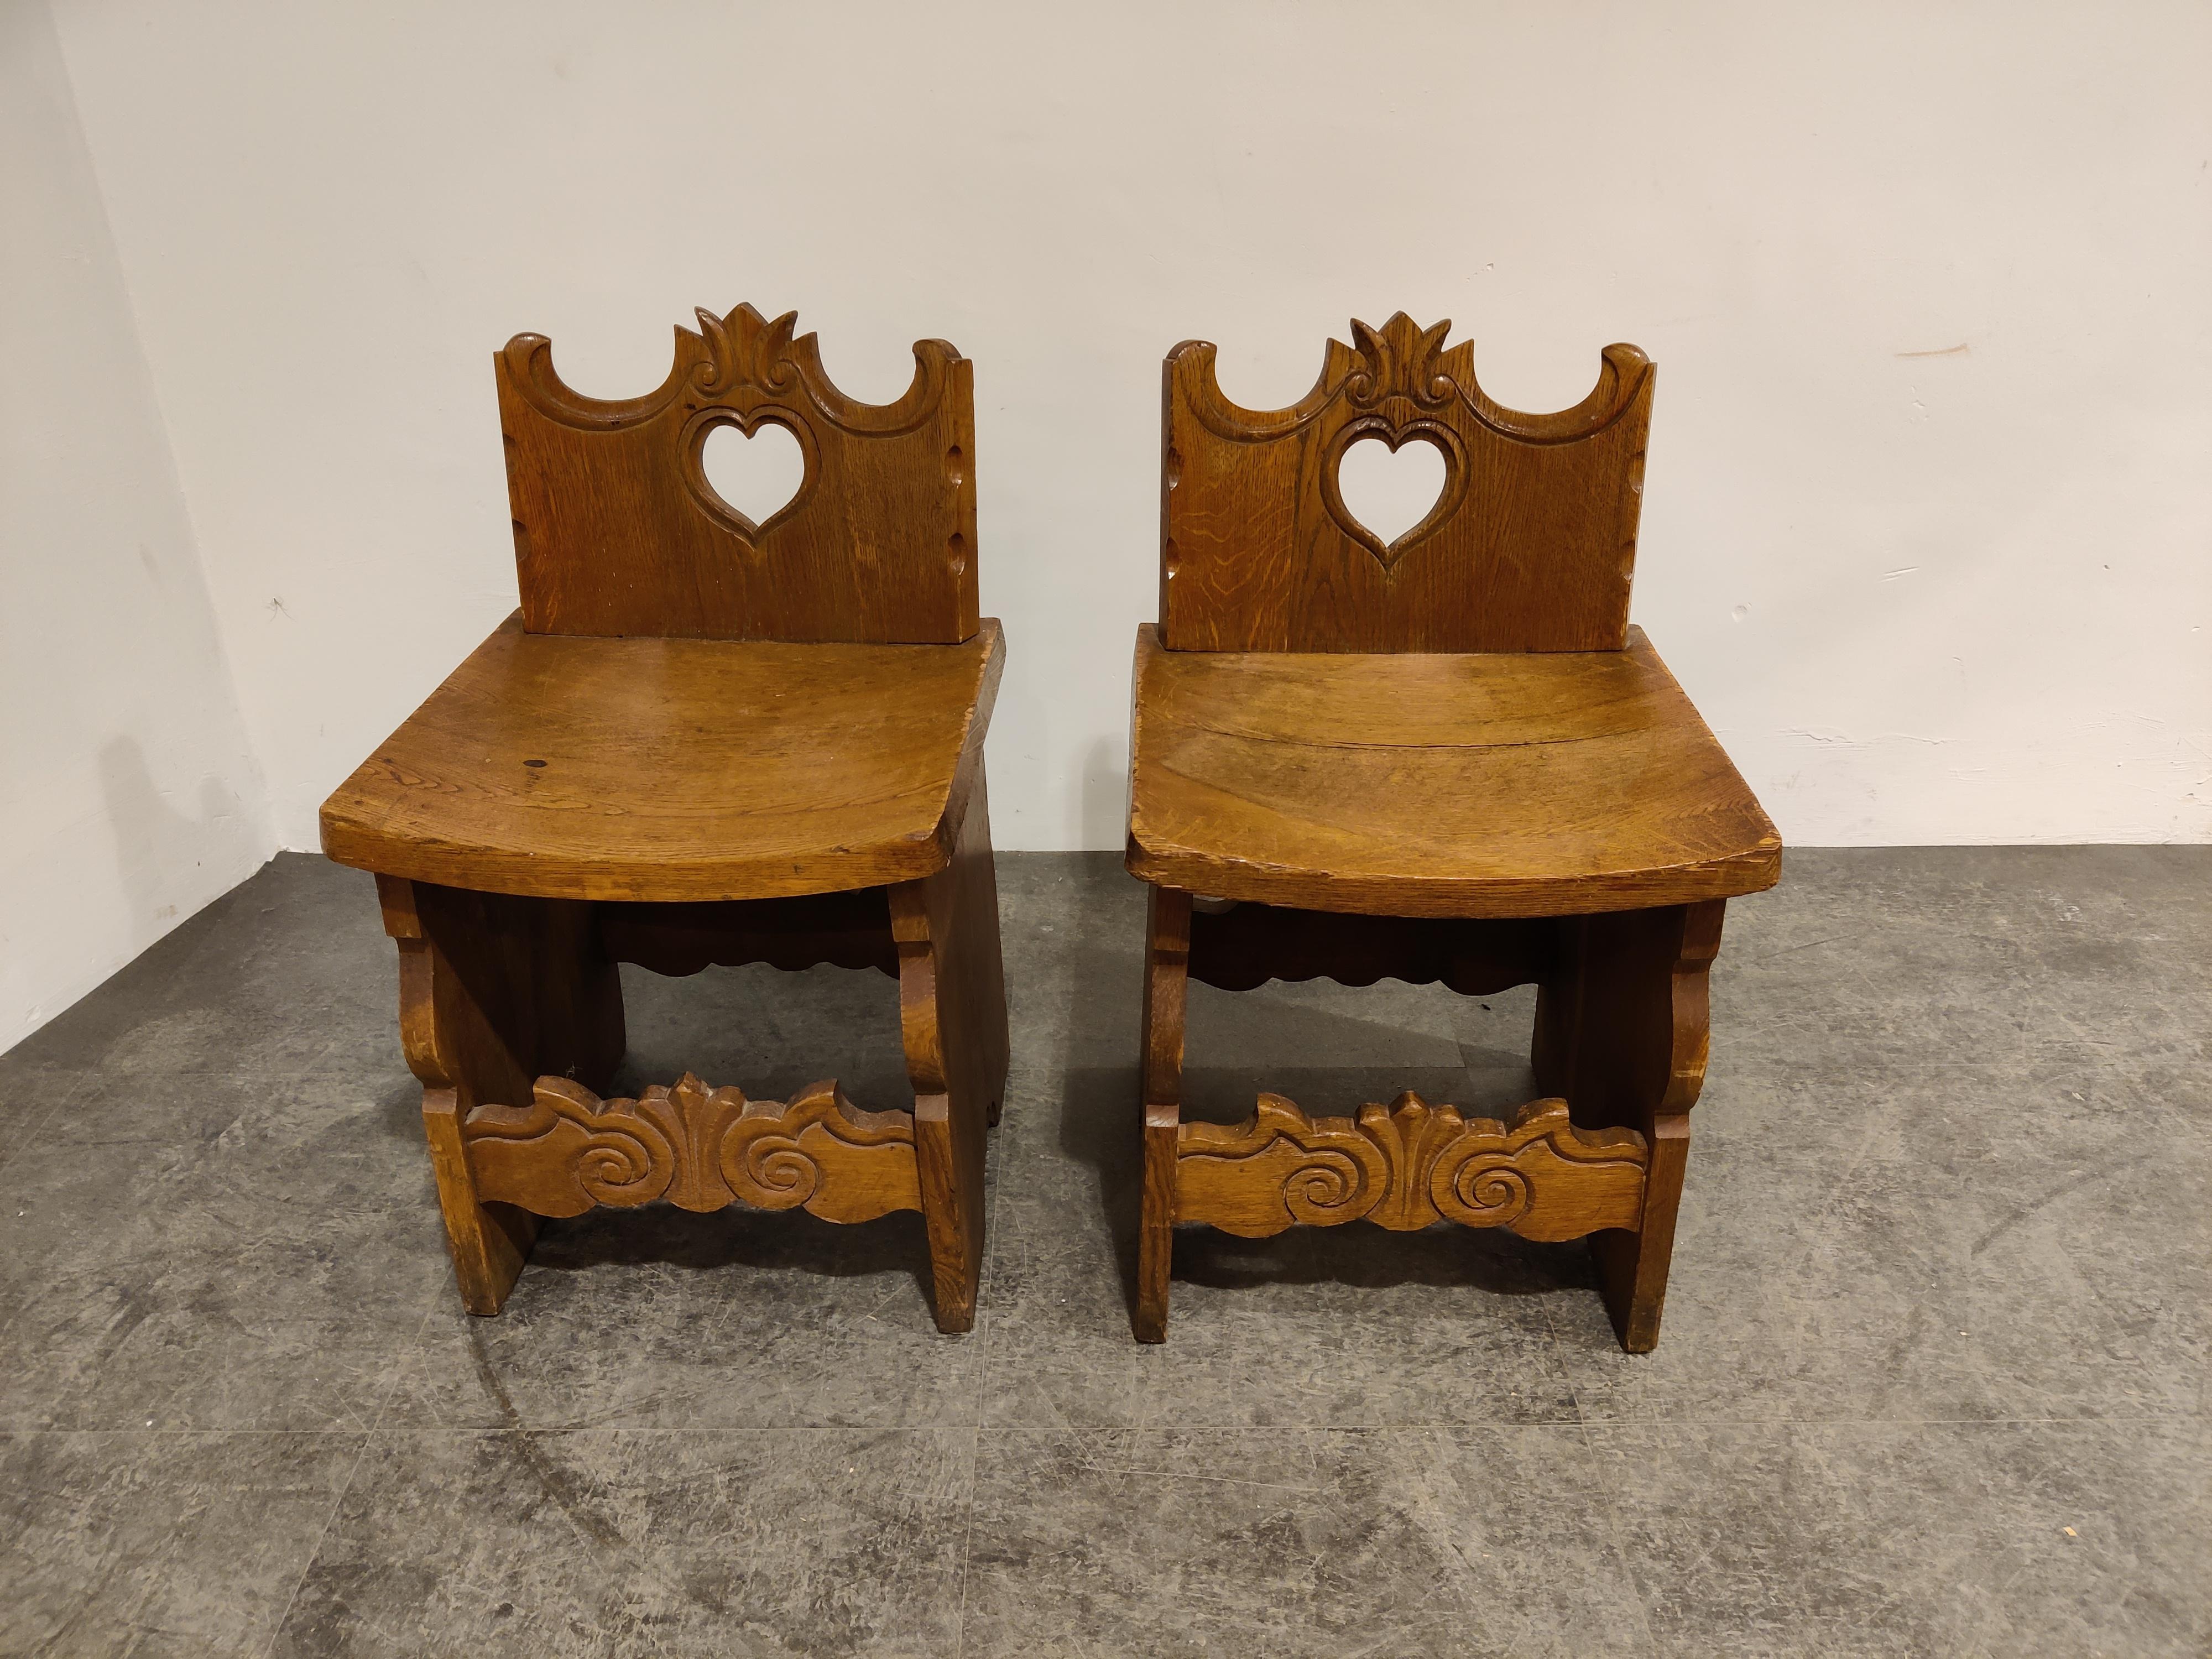 Anfang des 20. Jahrhunderts Folk Art geschnitzte Eichenstühle mit Herzausschnitt. 

Sehr robuste und schwere Stühle. 

Vermutlich ein italienisches Werk

1900er Jahre, Italien

Guter Zustand

Tolles dekoratives